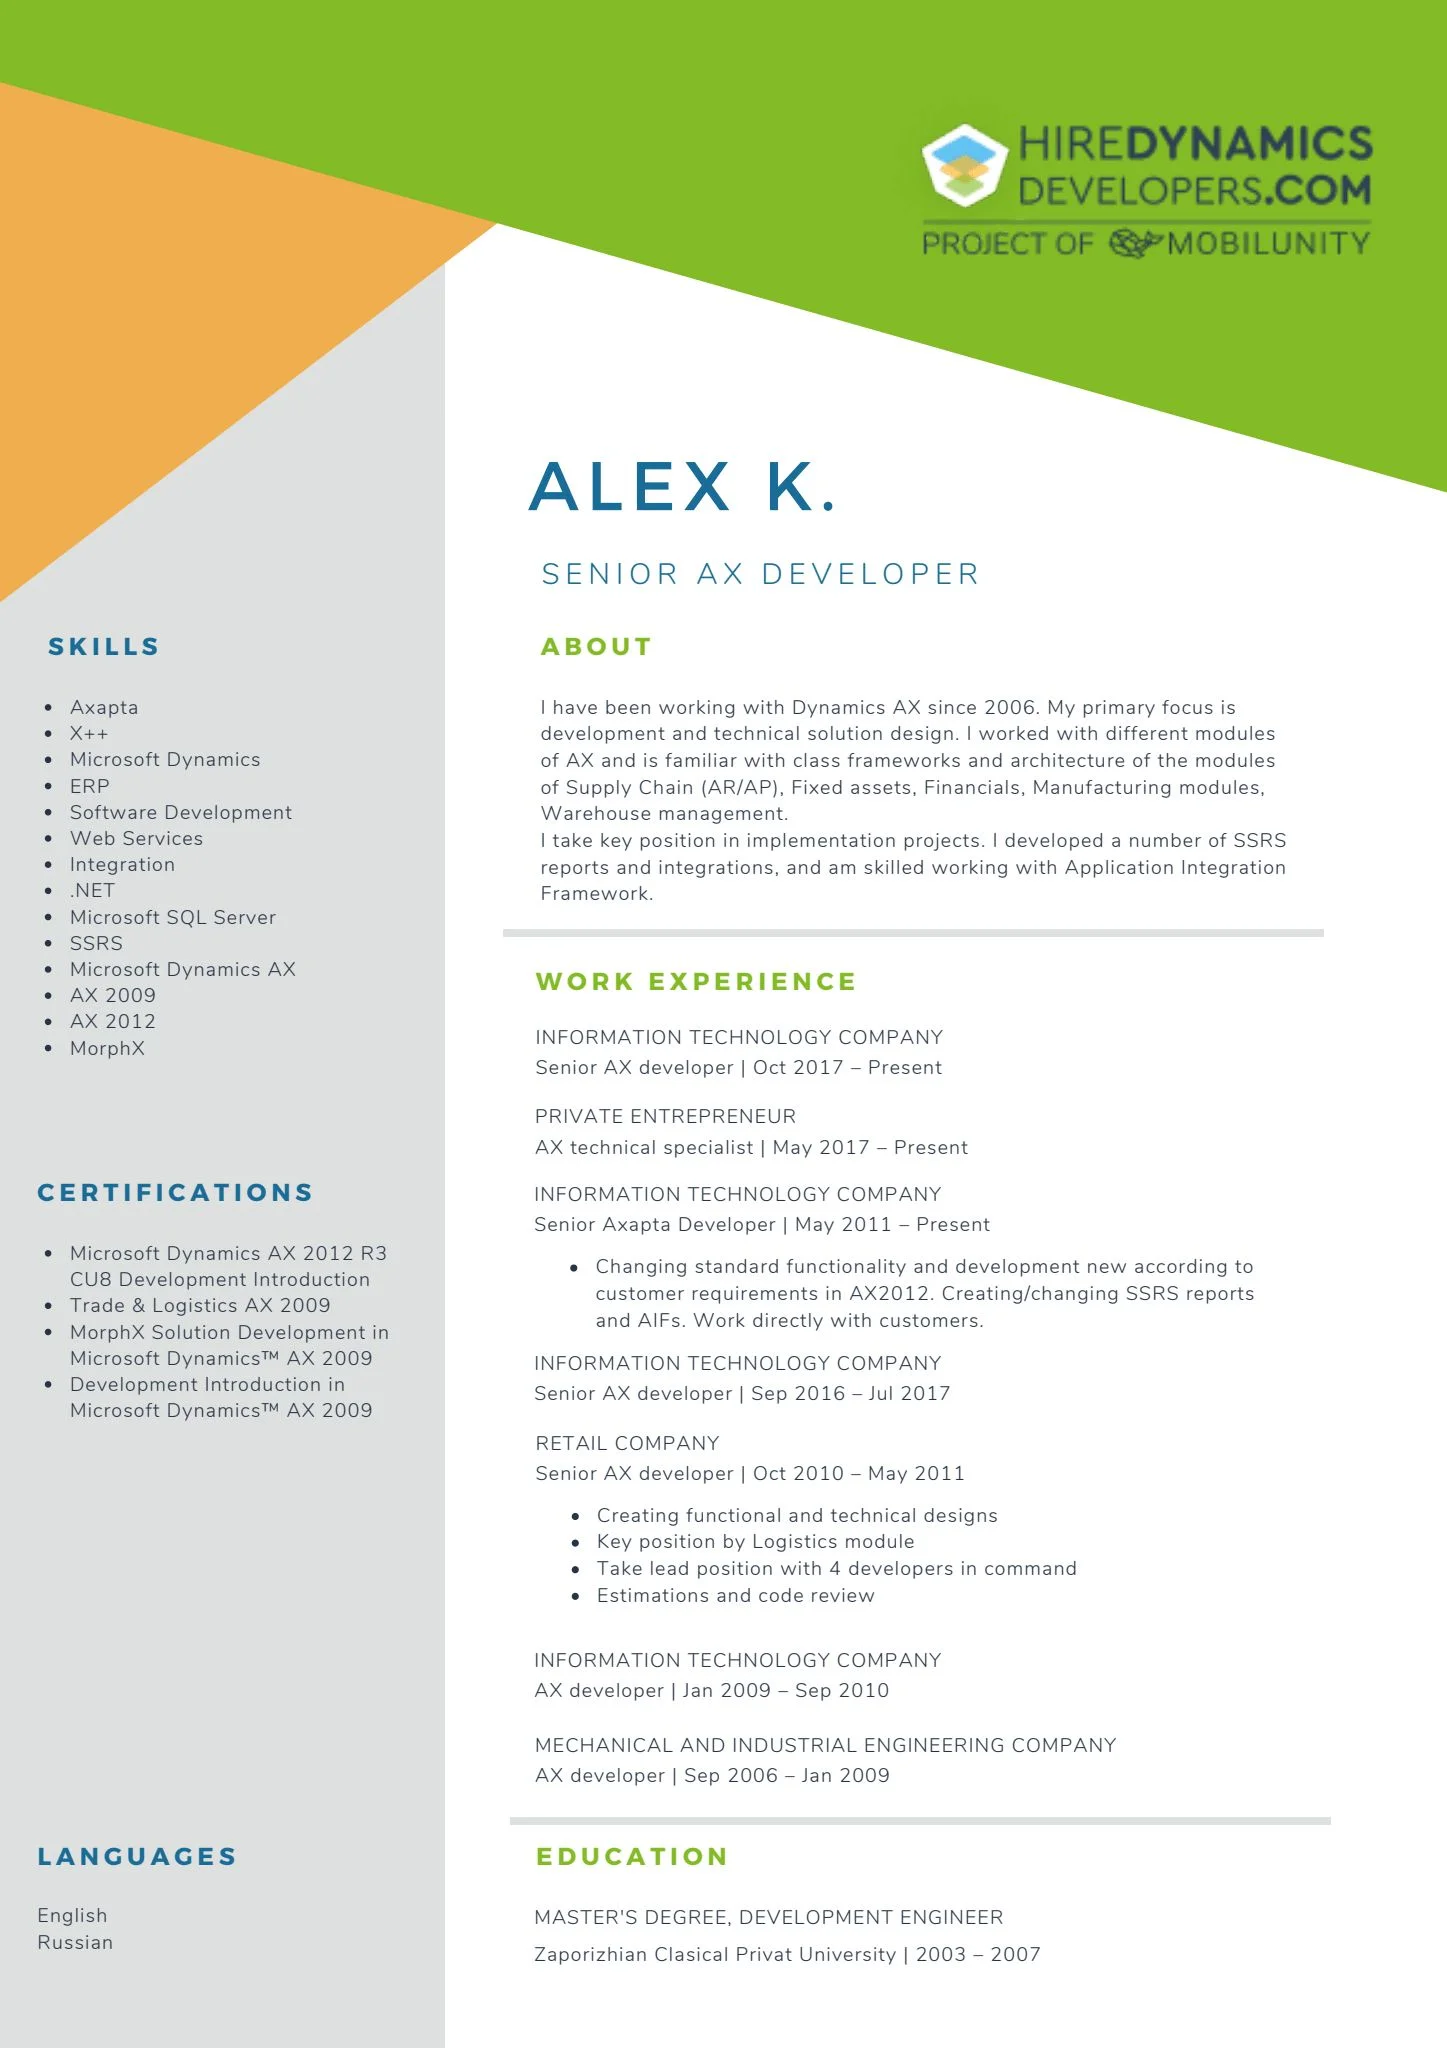 Alex K. – Senior AX developer